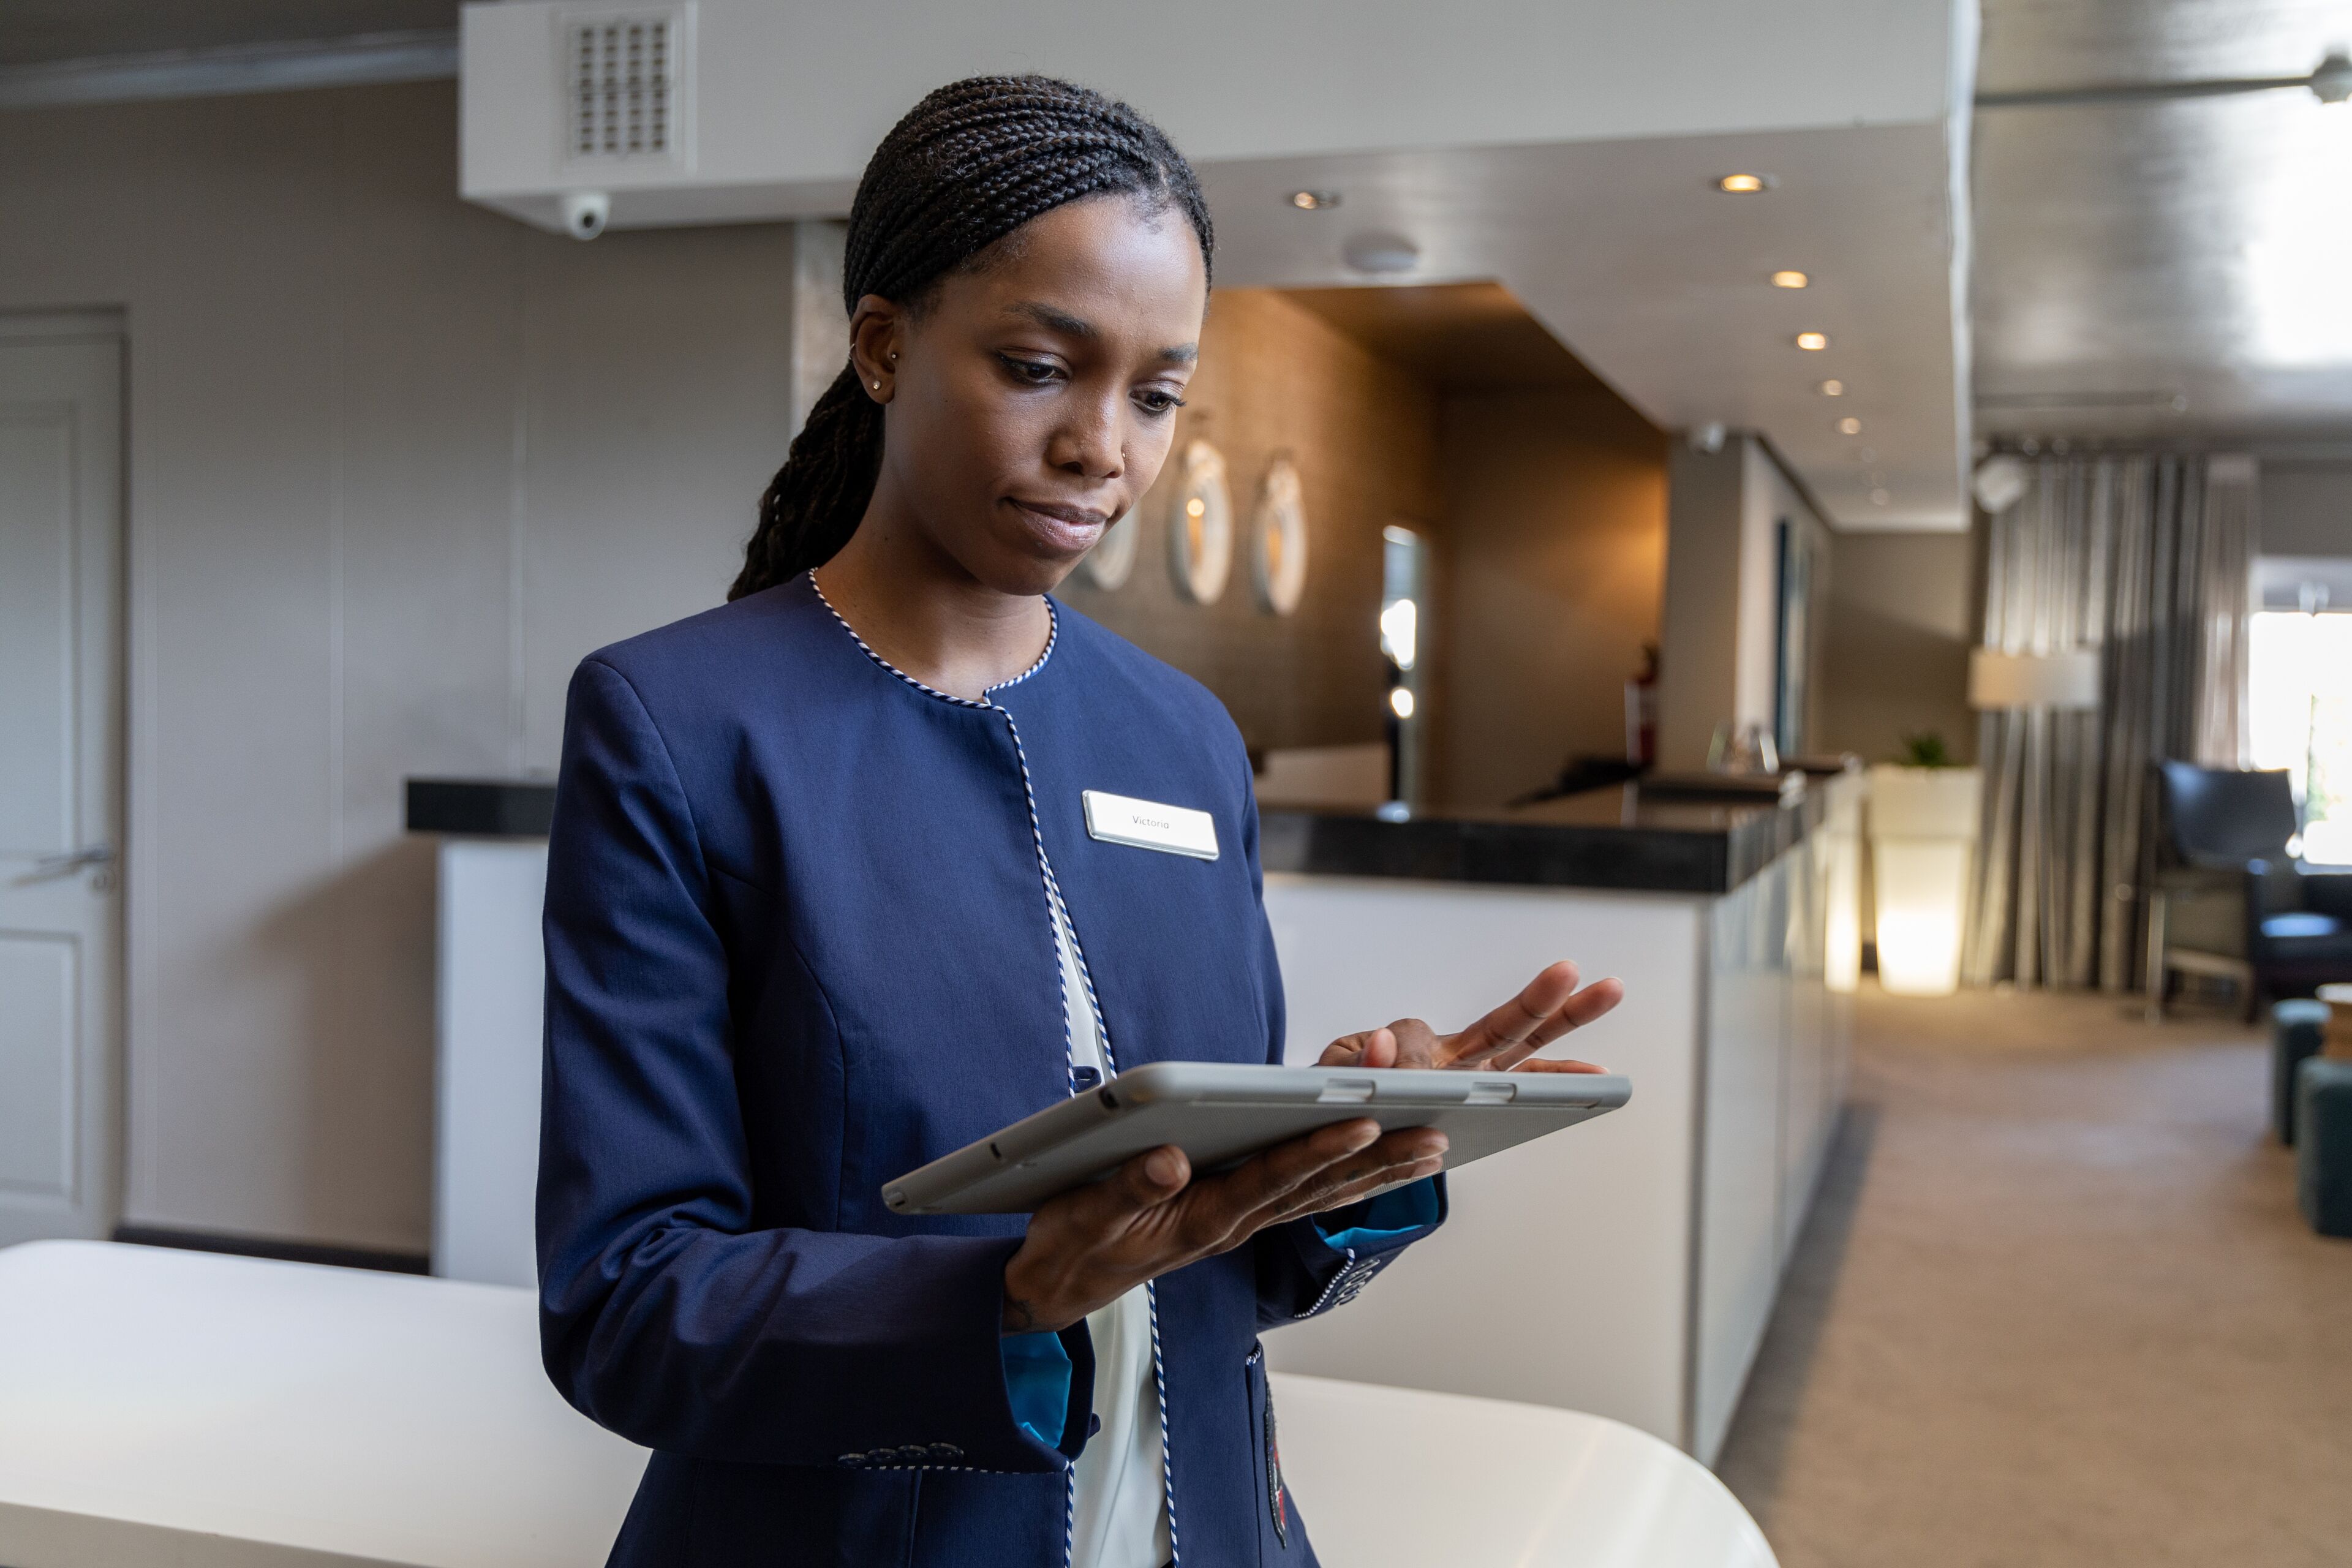 Un employé d'hôtel utilise une tablette, probablement pour gérer les services aux clients ou les enregistrements dans le hall.

